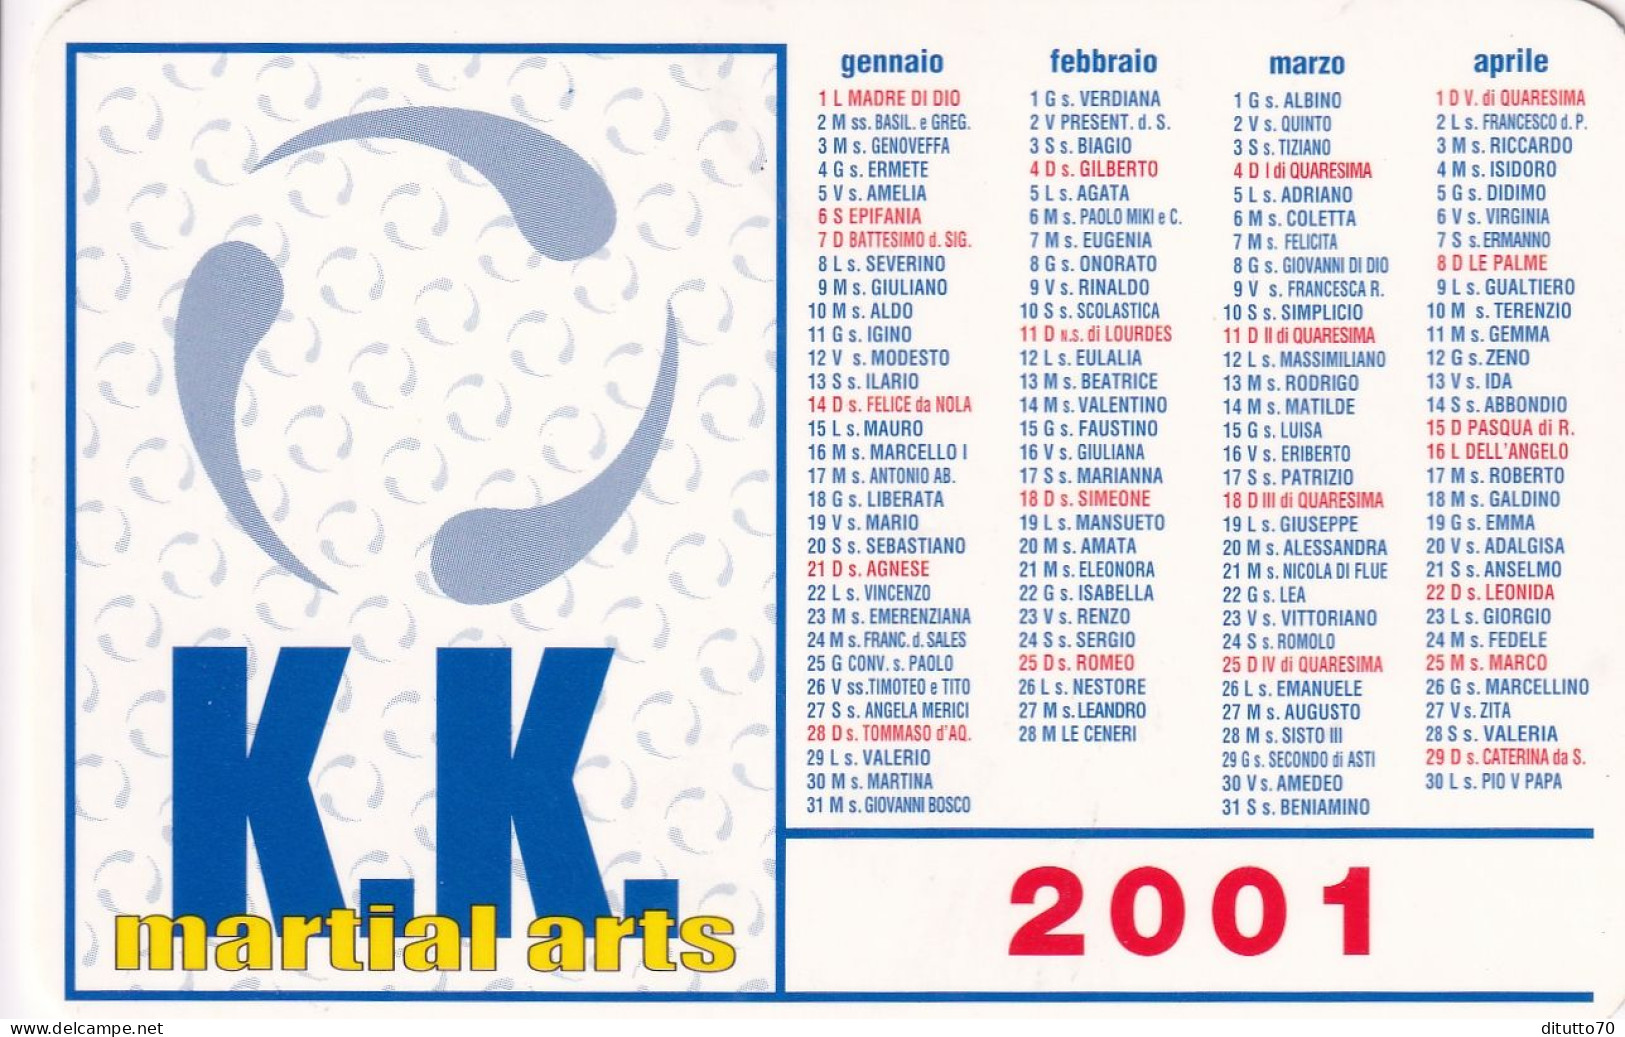 Calendarietto - K.k. - Martial Arts - Anno 2001 - Small : 2001-...